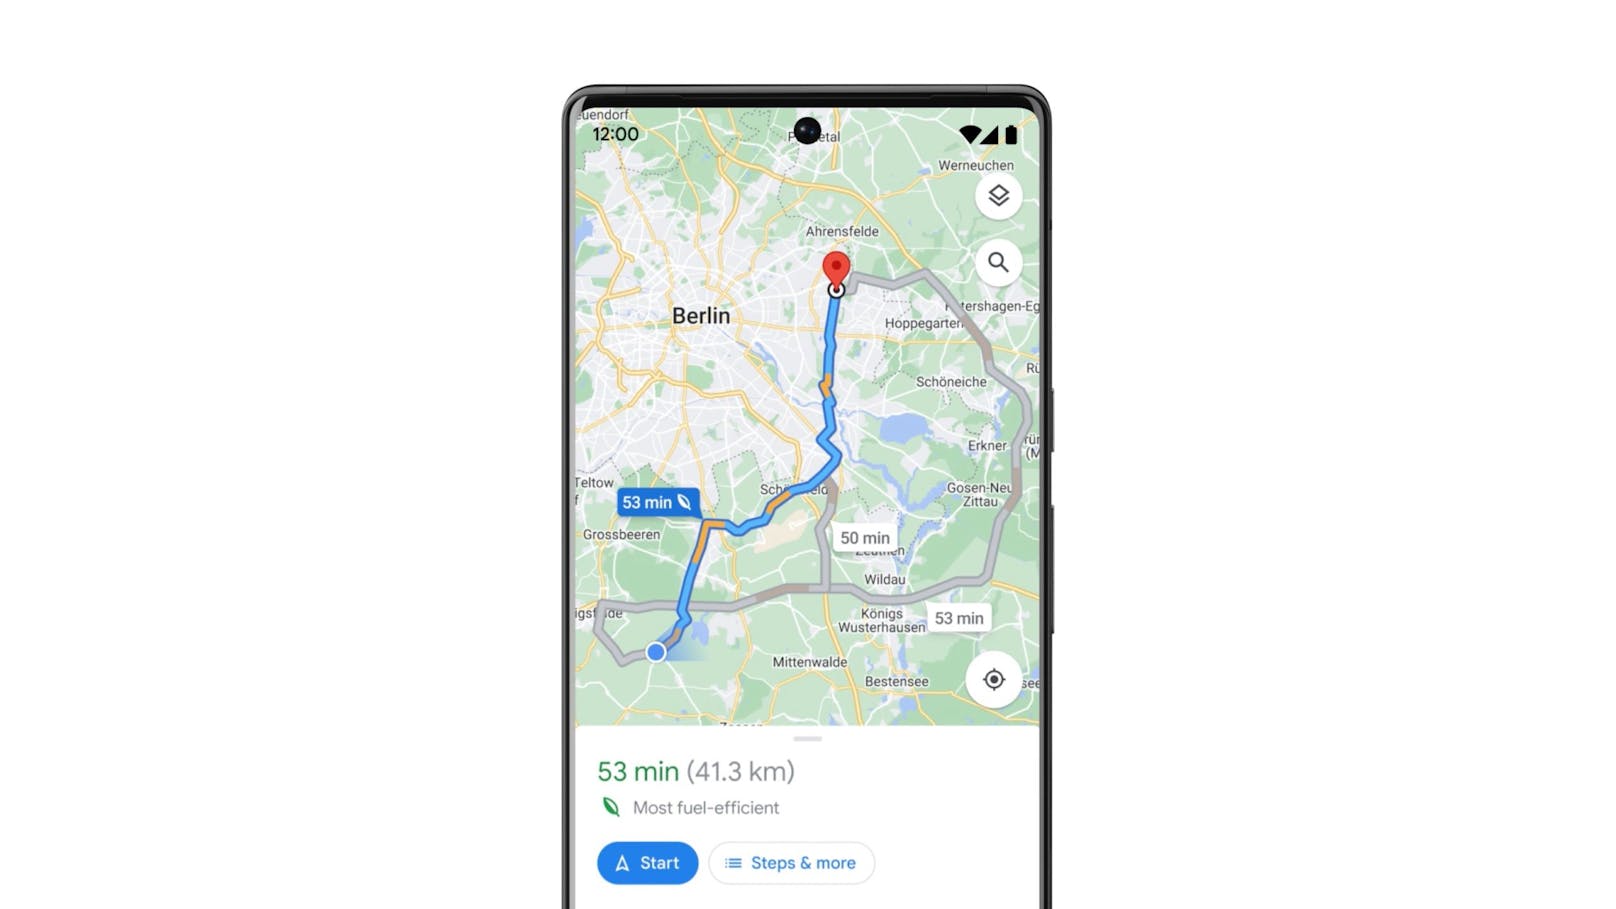 Google Maps unterstützt Nutzer:innen demnächst auch in Europa bei der umweltfreundlichen Routenplanung, indem ihnen die kraftstoffeffizienteste Route angezeigt wird.